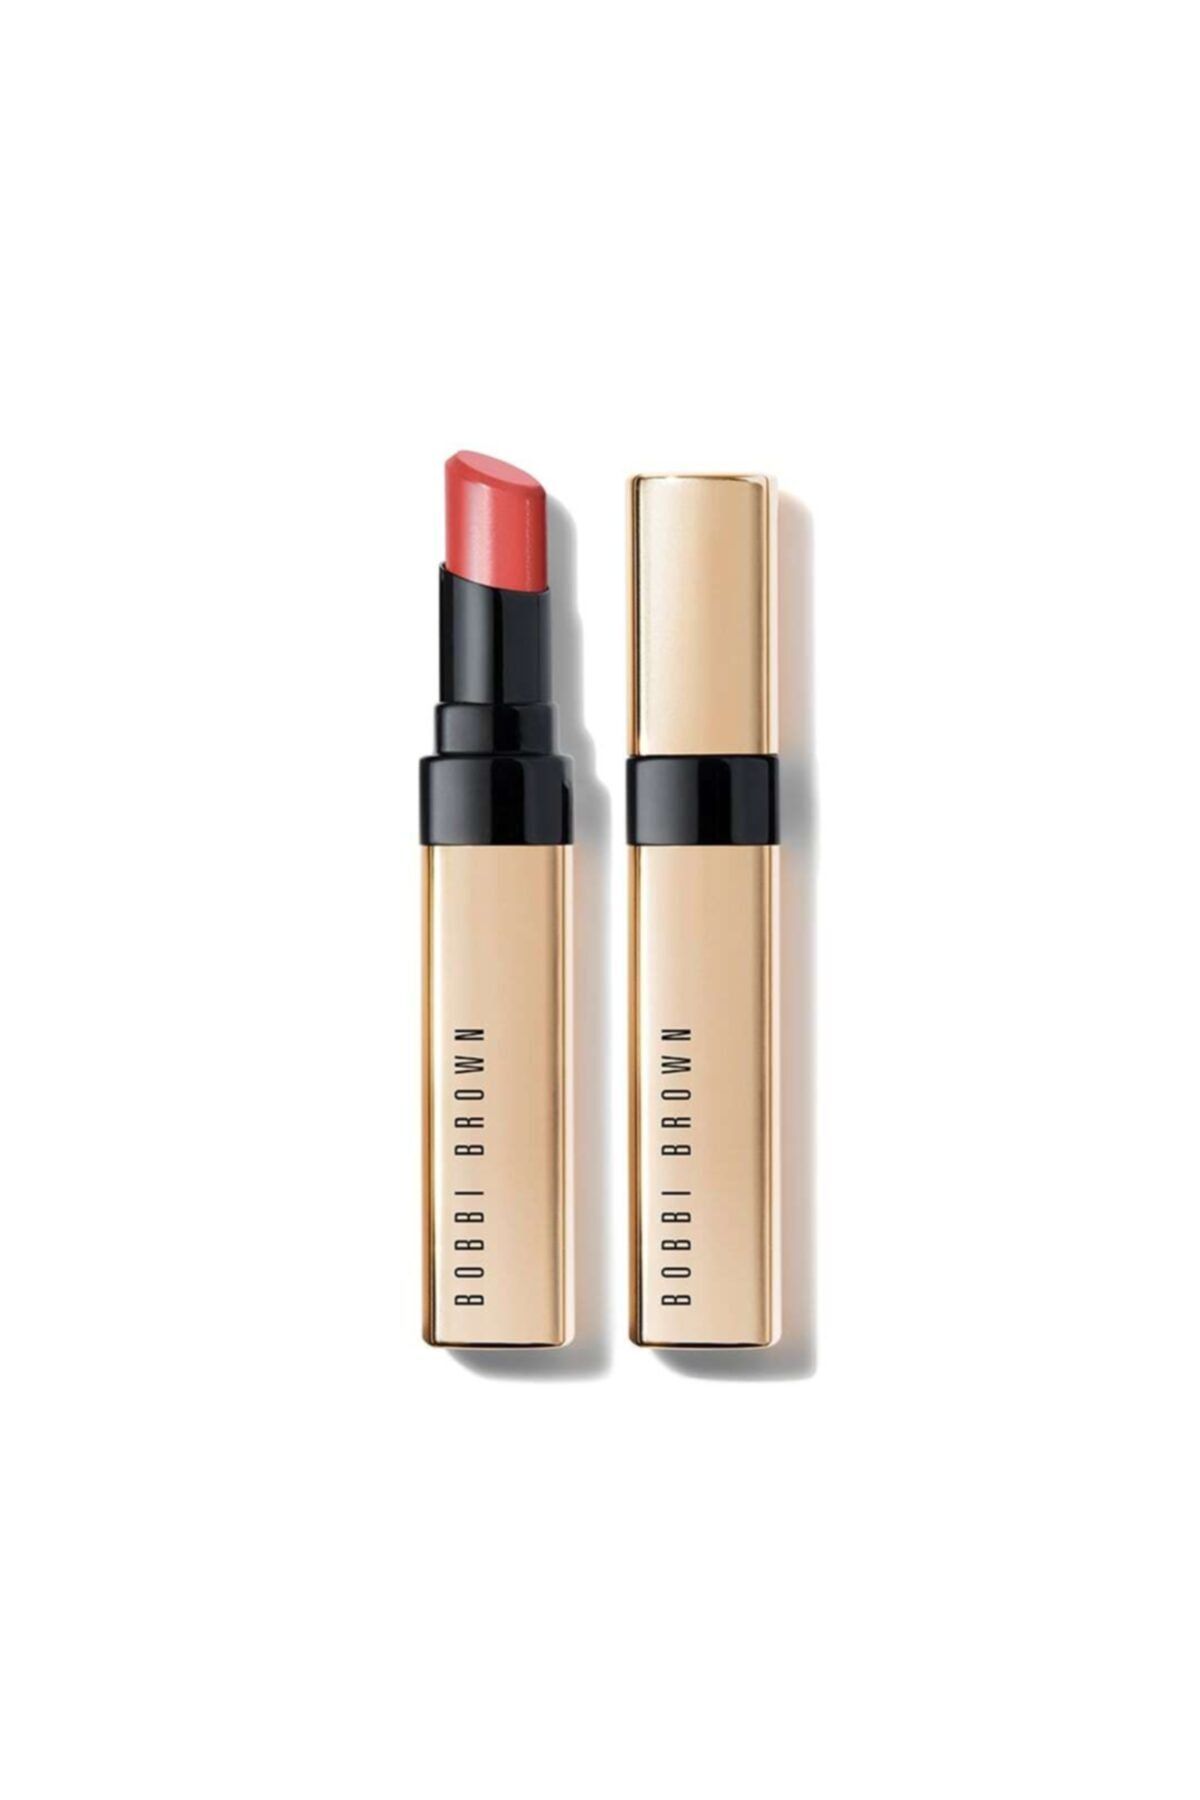 Bobbi Brown Luxe Shine Intense Lipstick / Ruj Fh19 2.3g Paris Pink 716170225524